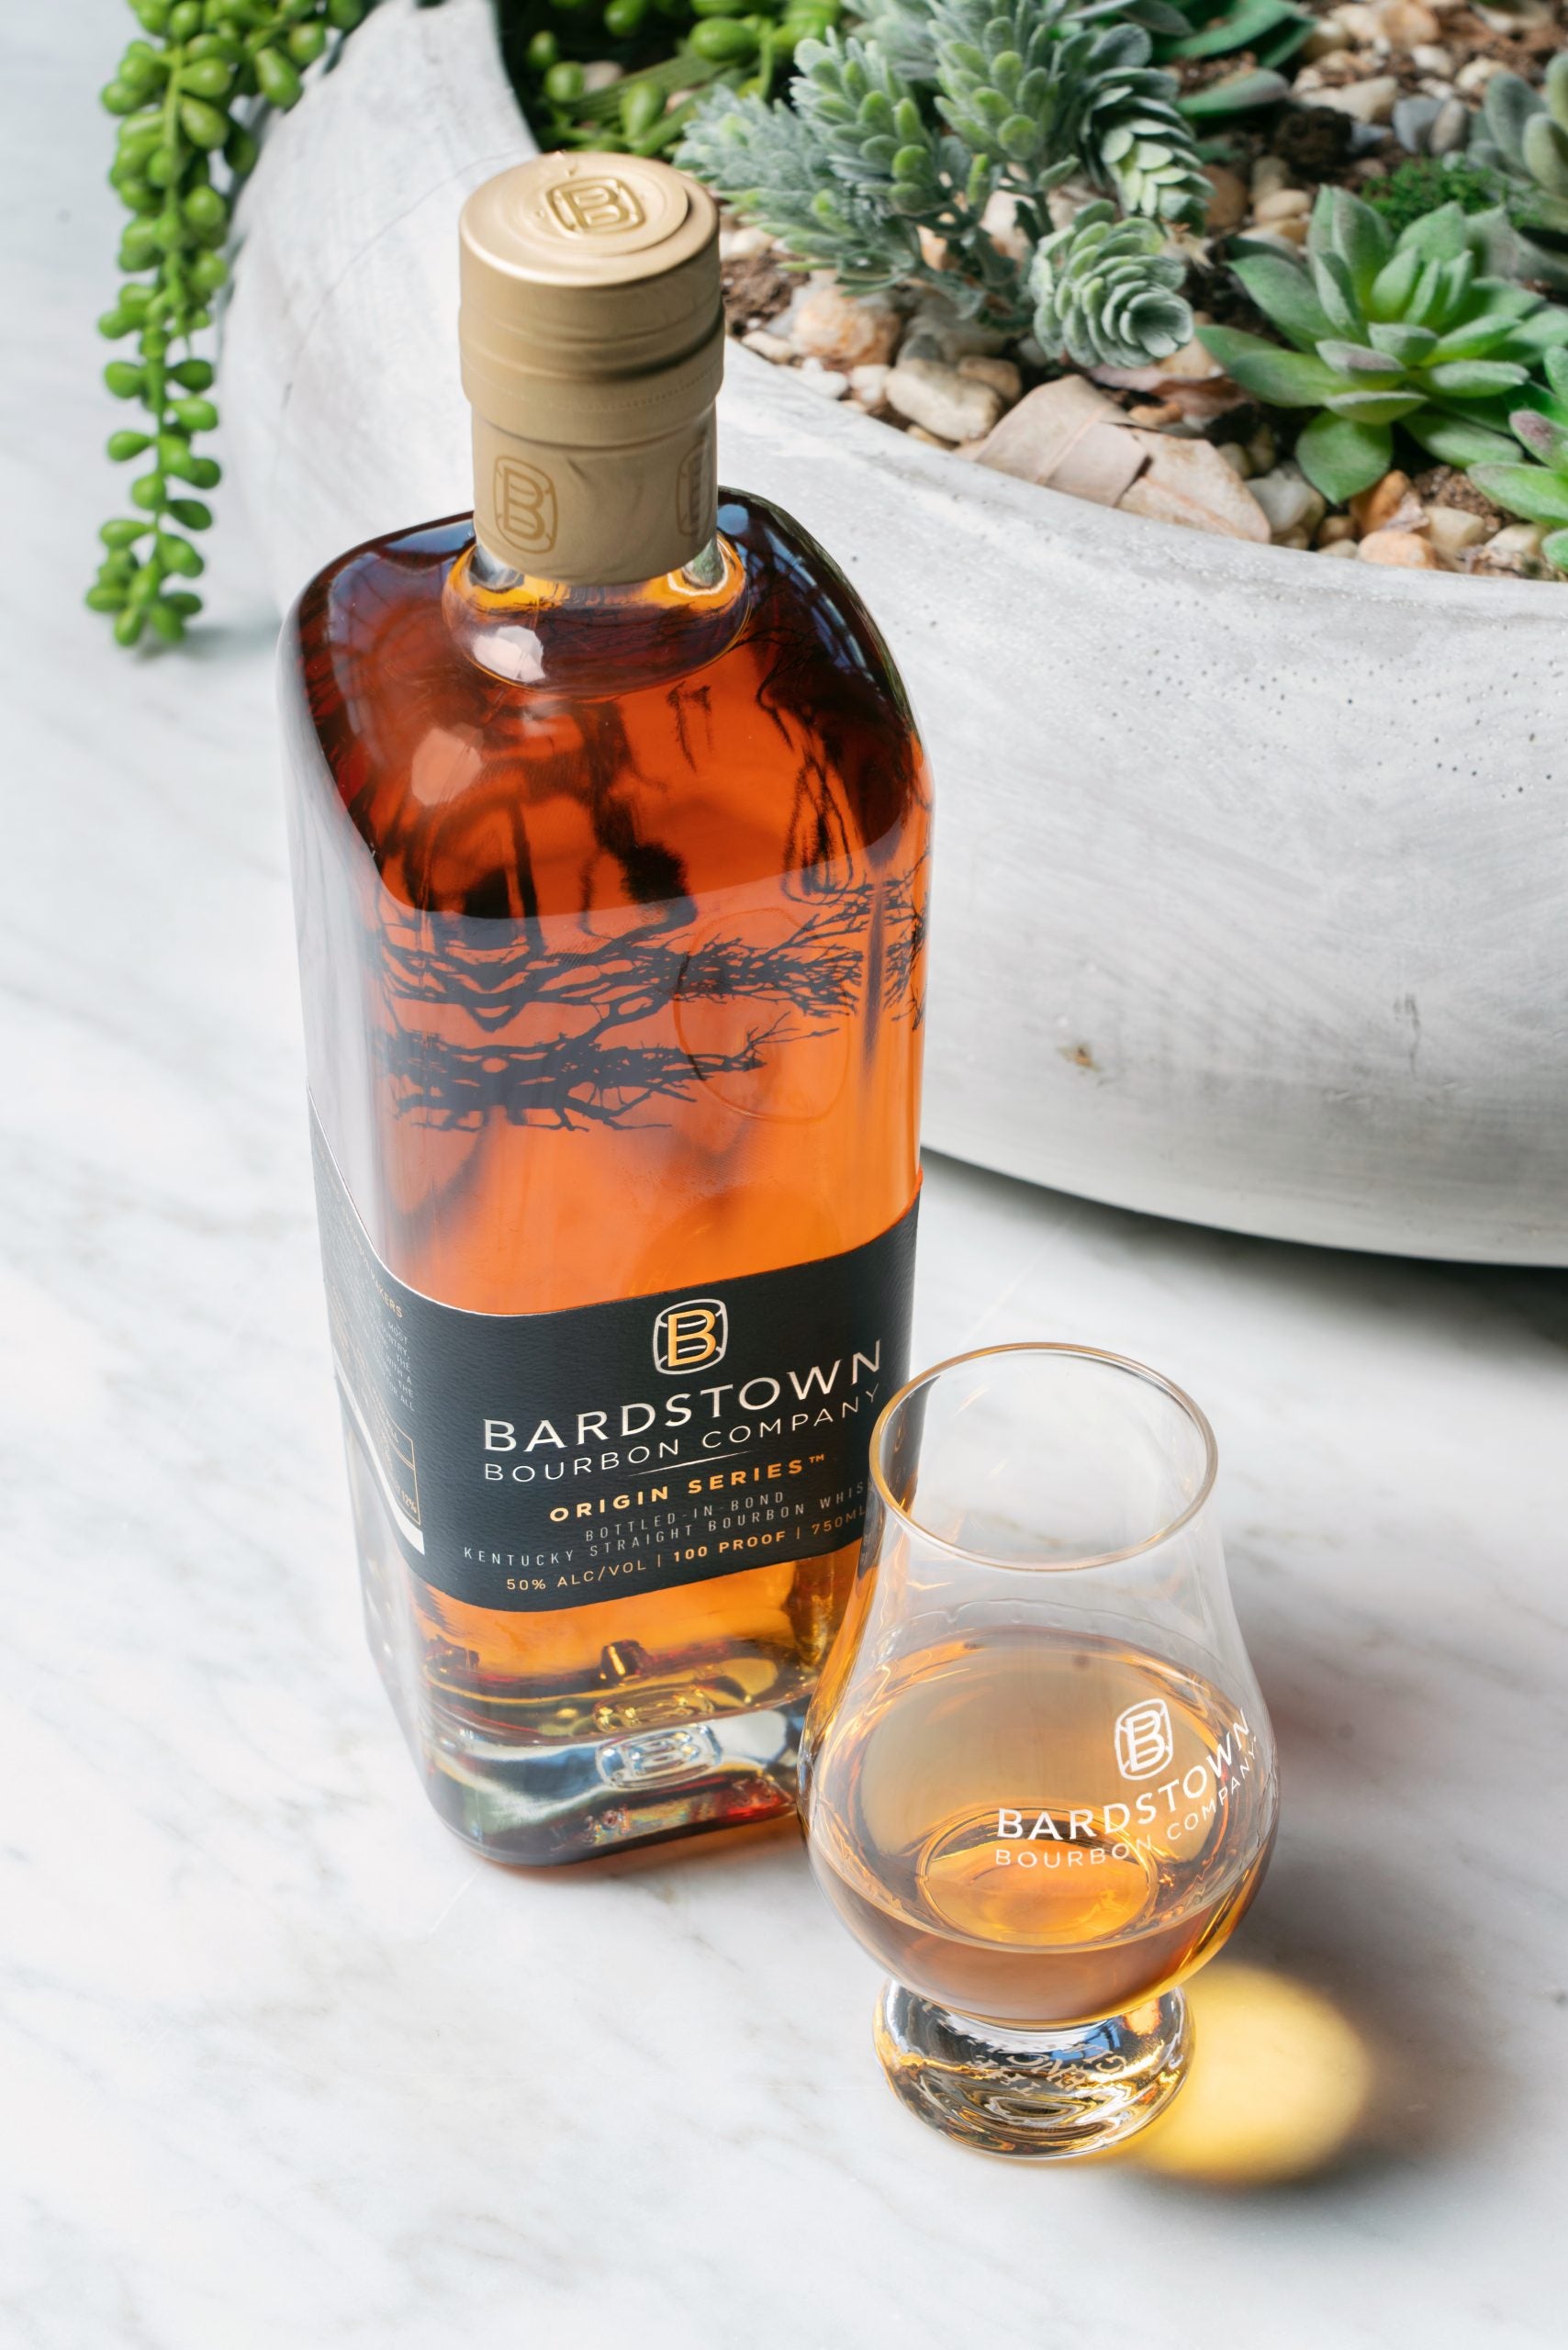 Bardstown Origin Series Bottled in Bond Kentucky Straight Bourbon Whiskey